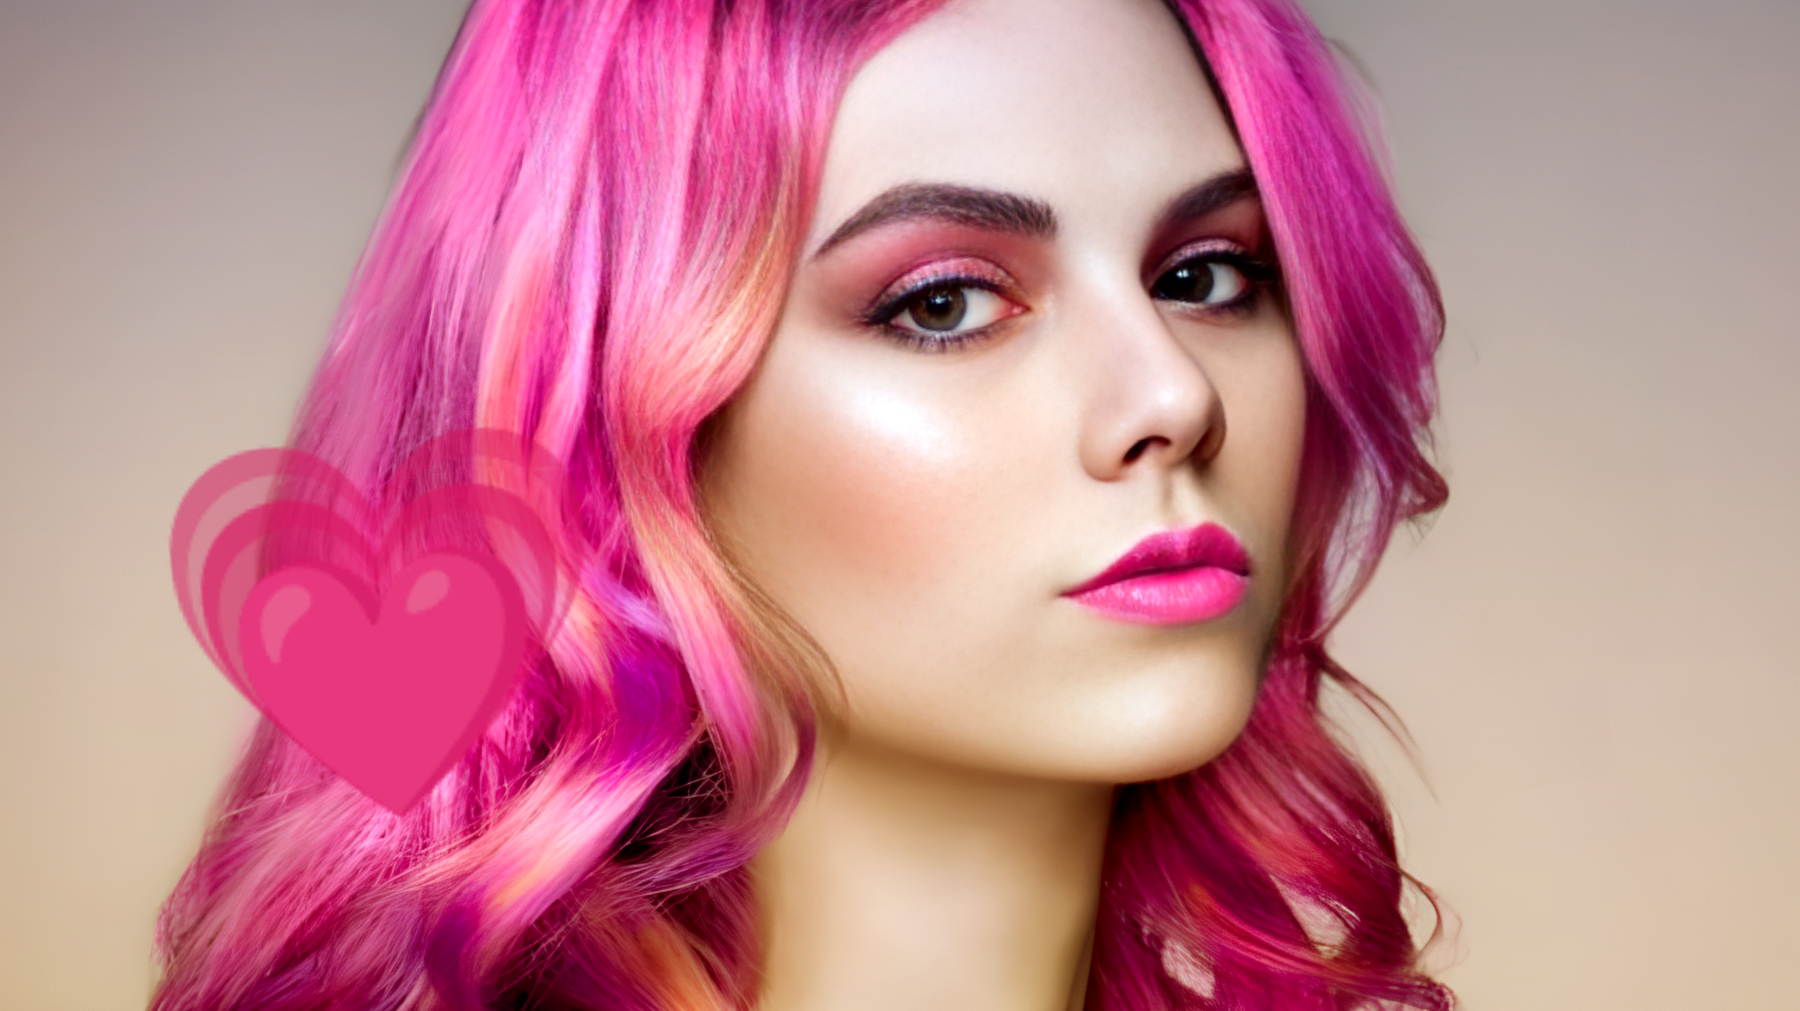 Descubre el provocador mensaje detrás del cabello rosa según los expertos en psicología